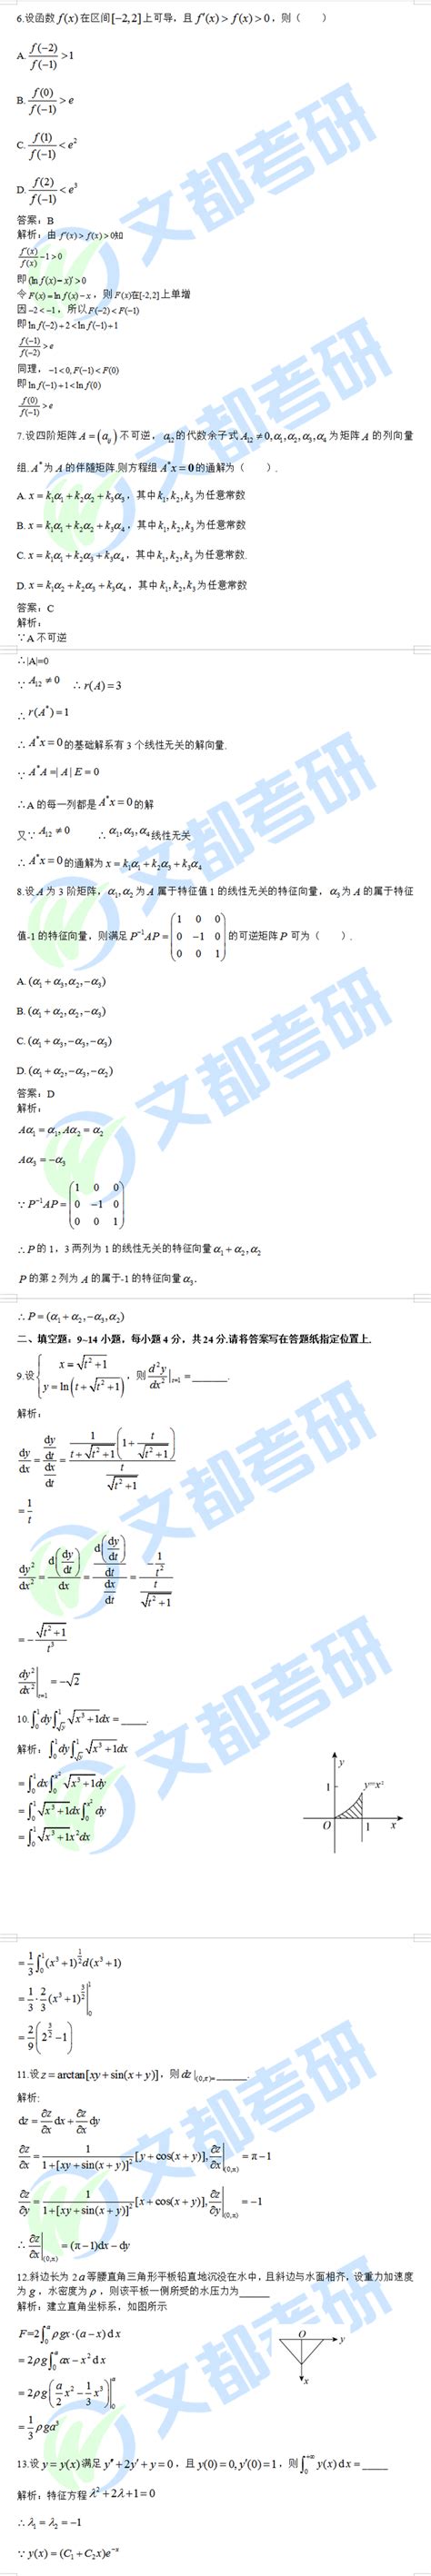 扫码对答案数学人教版四年级上_页面_60.jpg